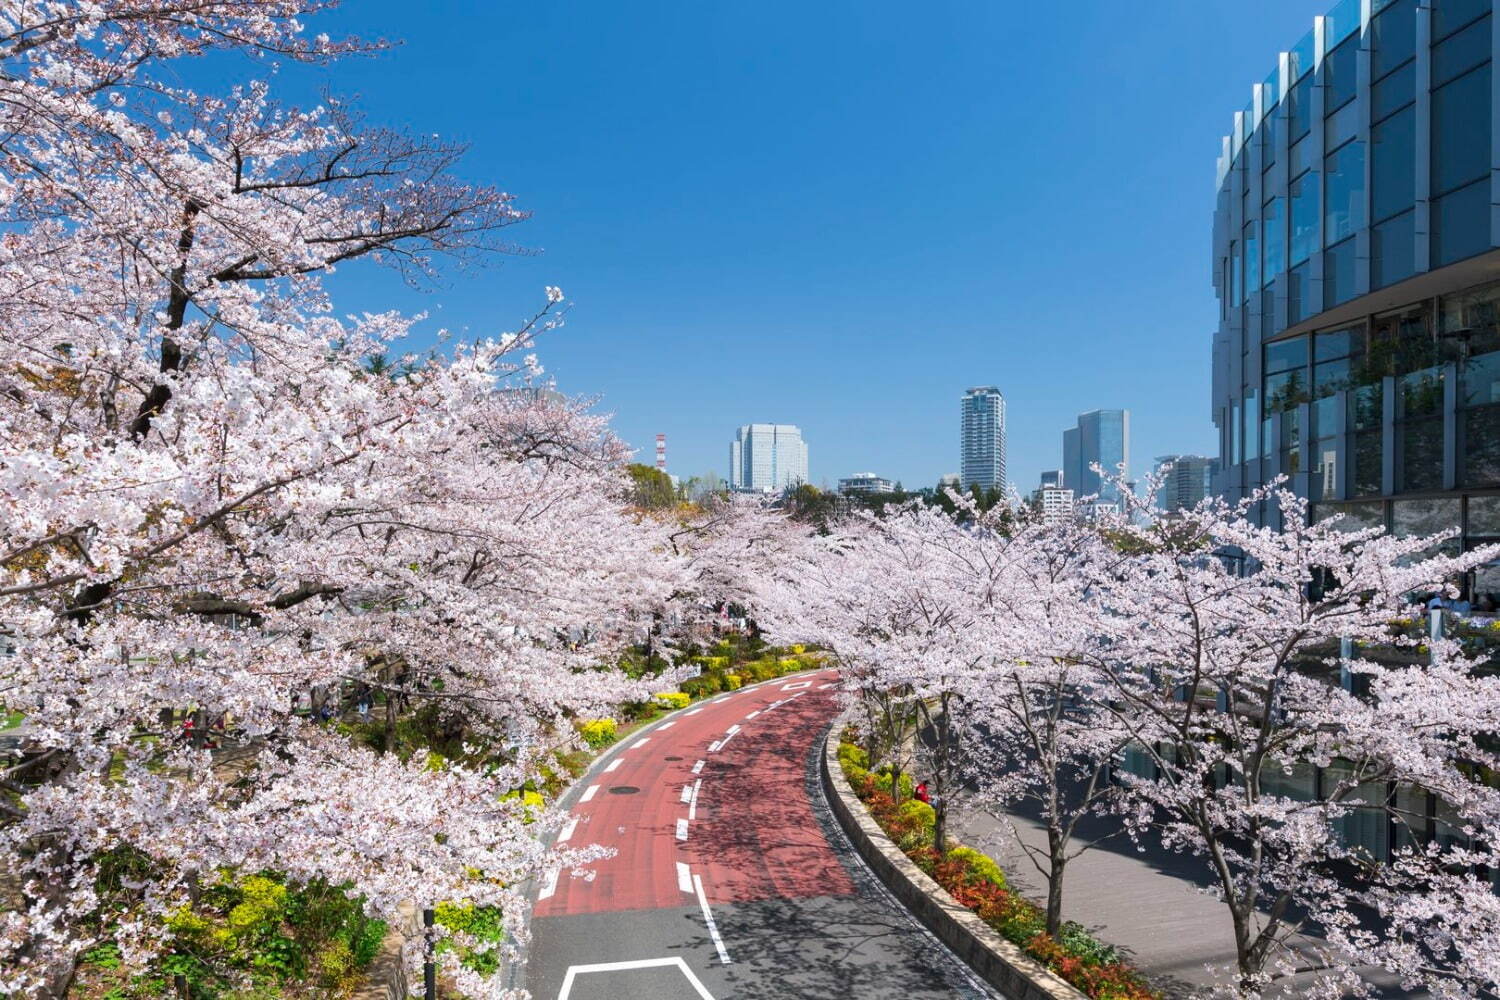 東京ミッドタウンの花見イベント「ミッドタウン ブロッサム」